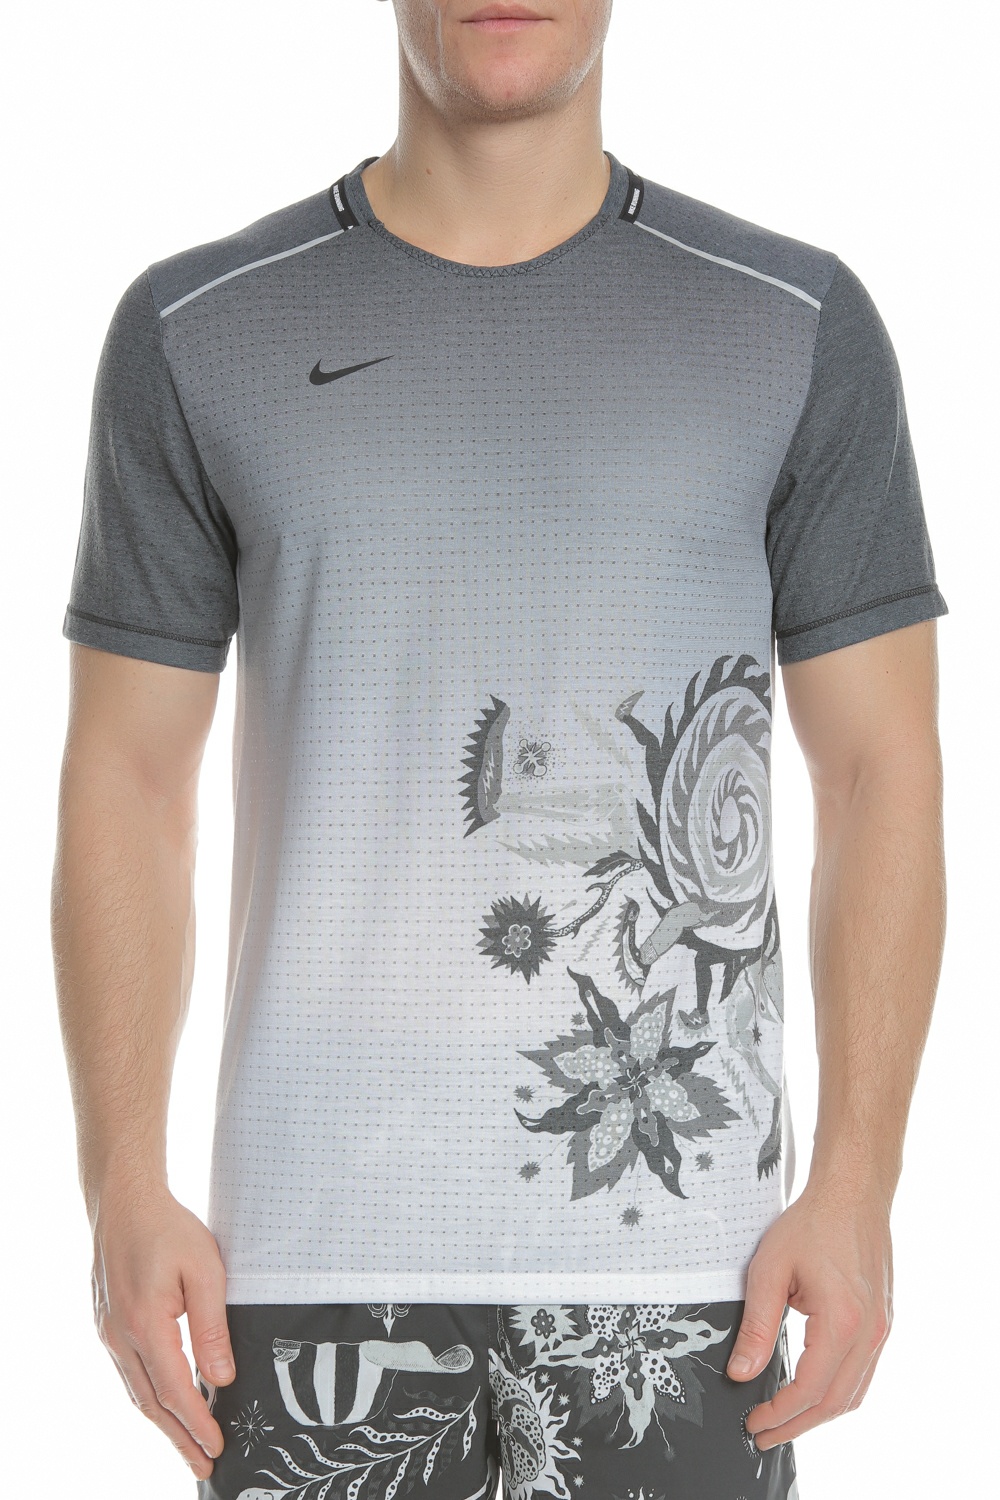 Ανδρικά/Ρούχα/Αθλητικά/T-shirt NIKE - Ανδρική αθλητική μπλούζα NIKE WILD RUN RISE 365 γκρι